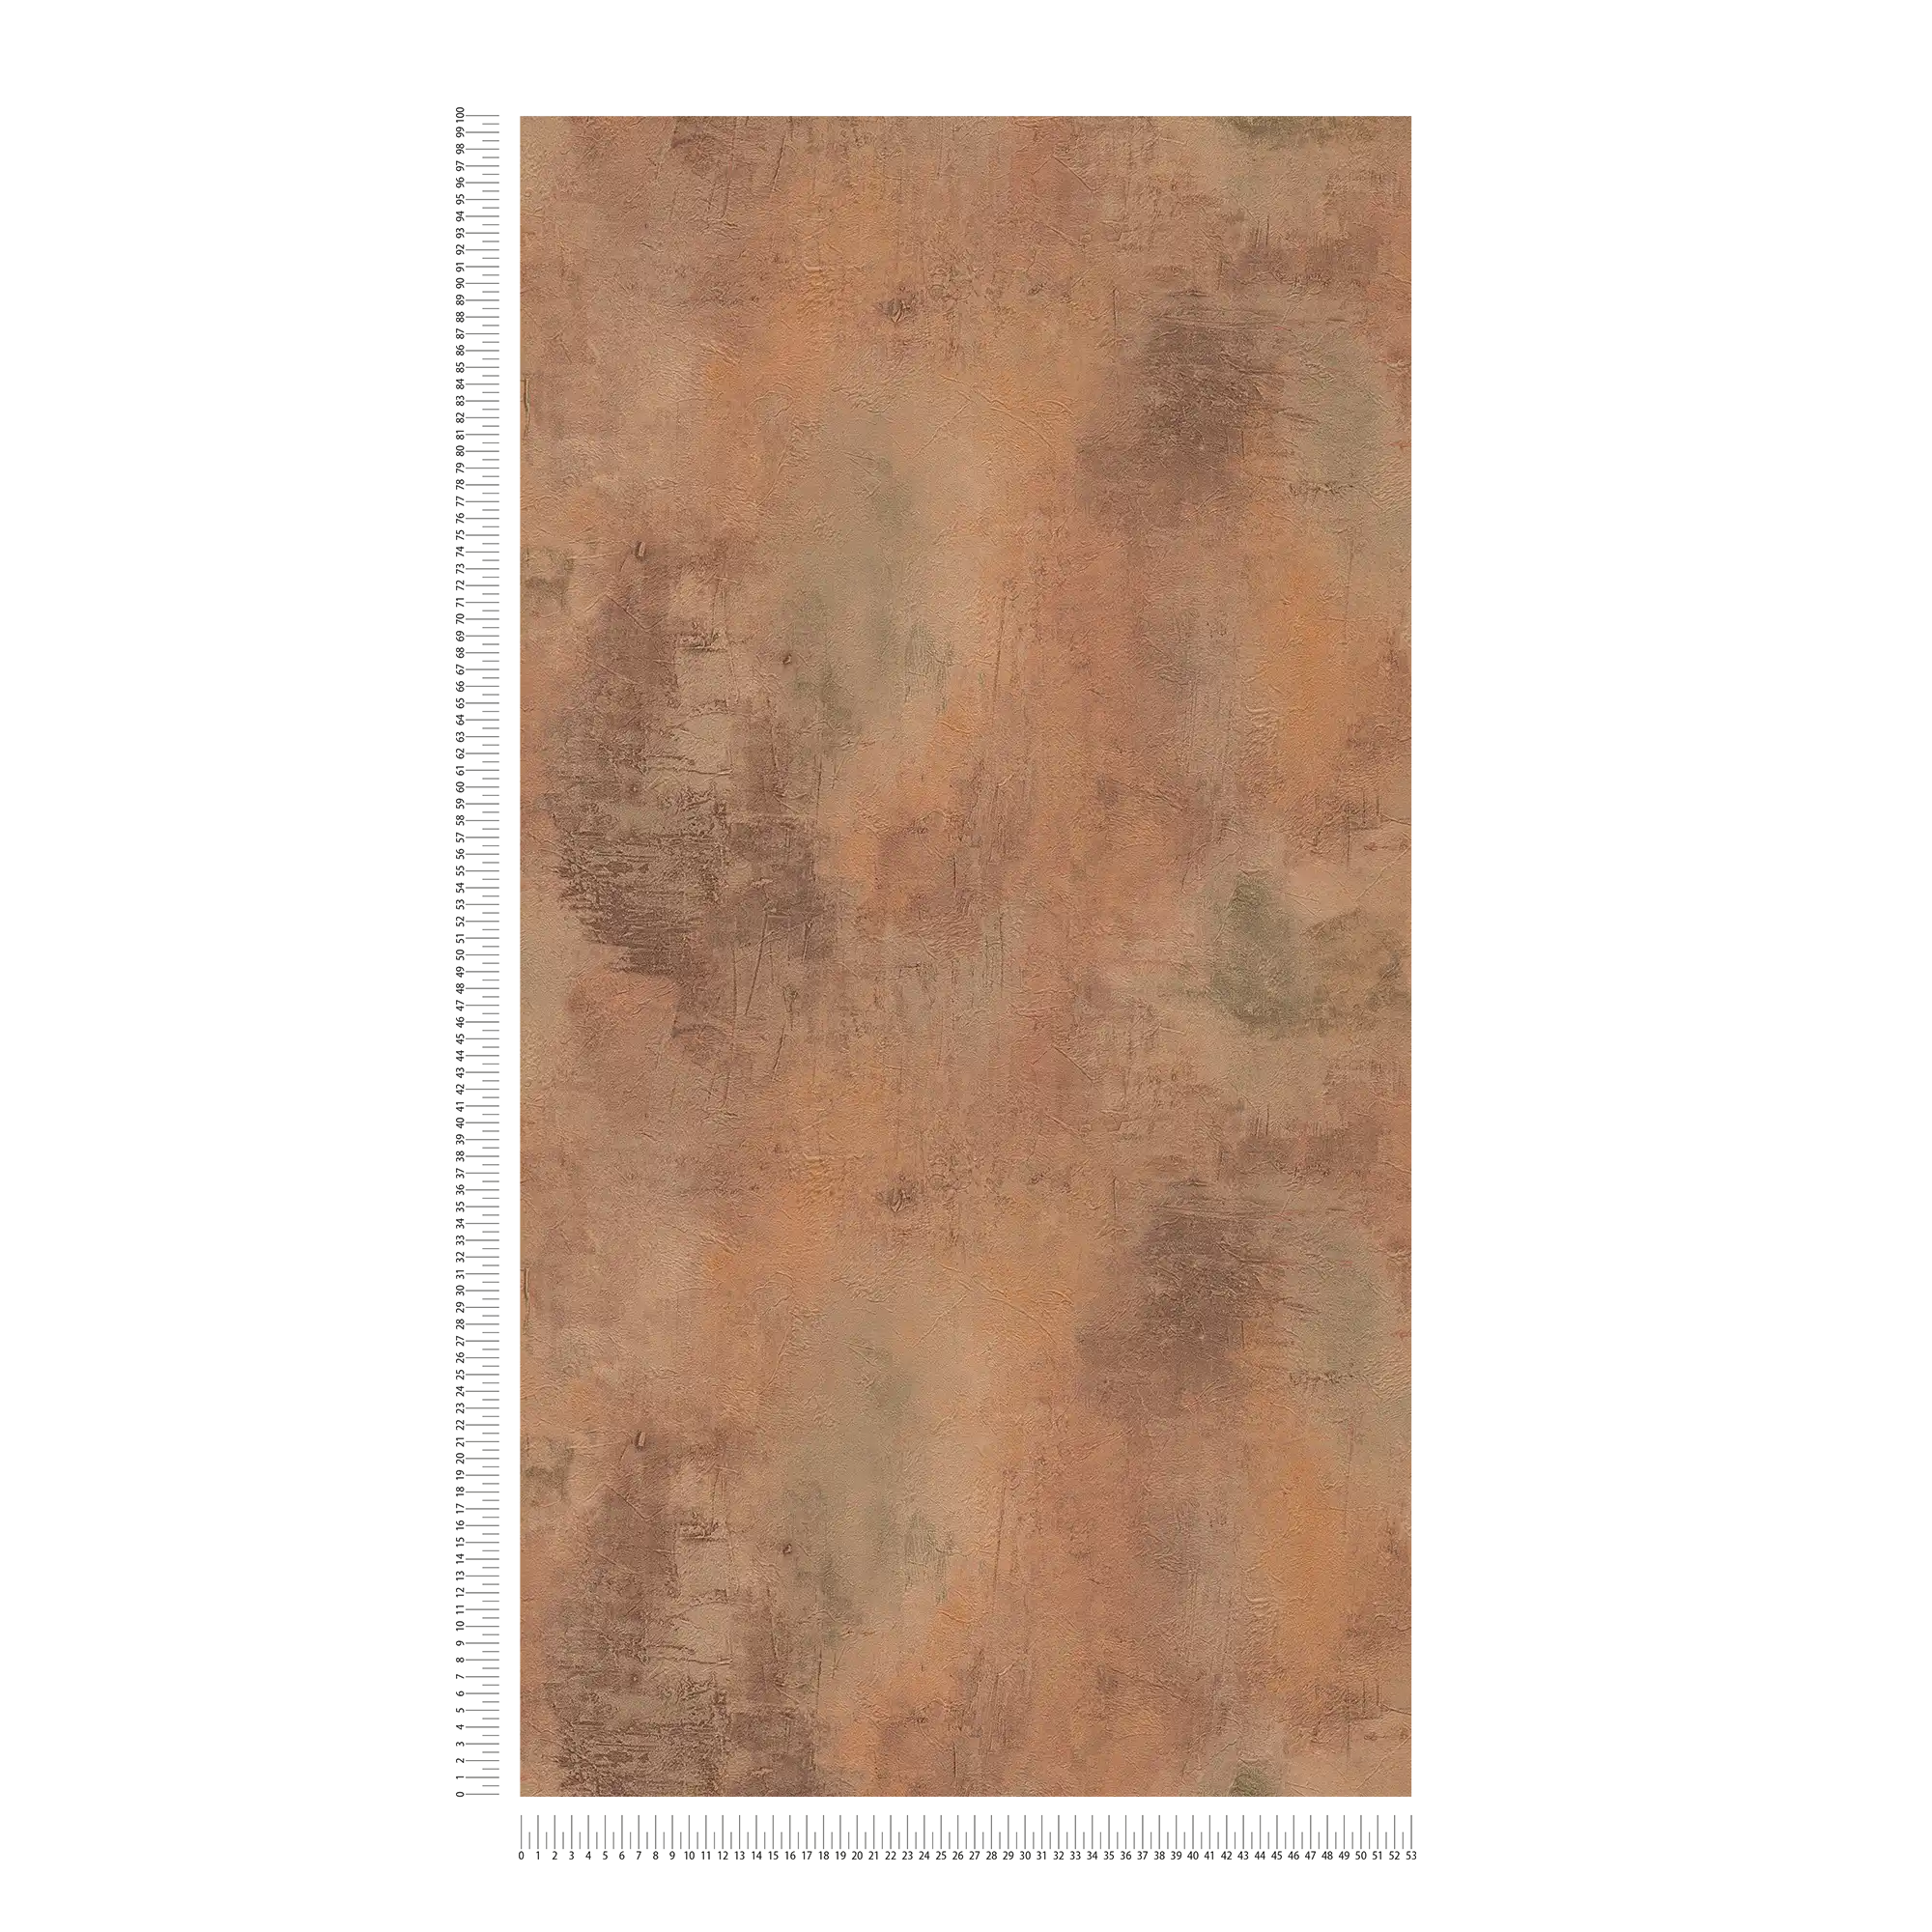             Papel pintado con motivos de óxido y aspecto metálico - marrón, naranja, gris
        